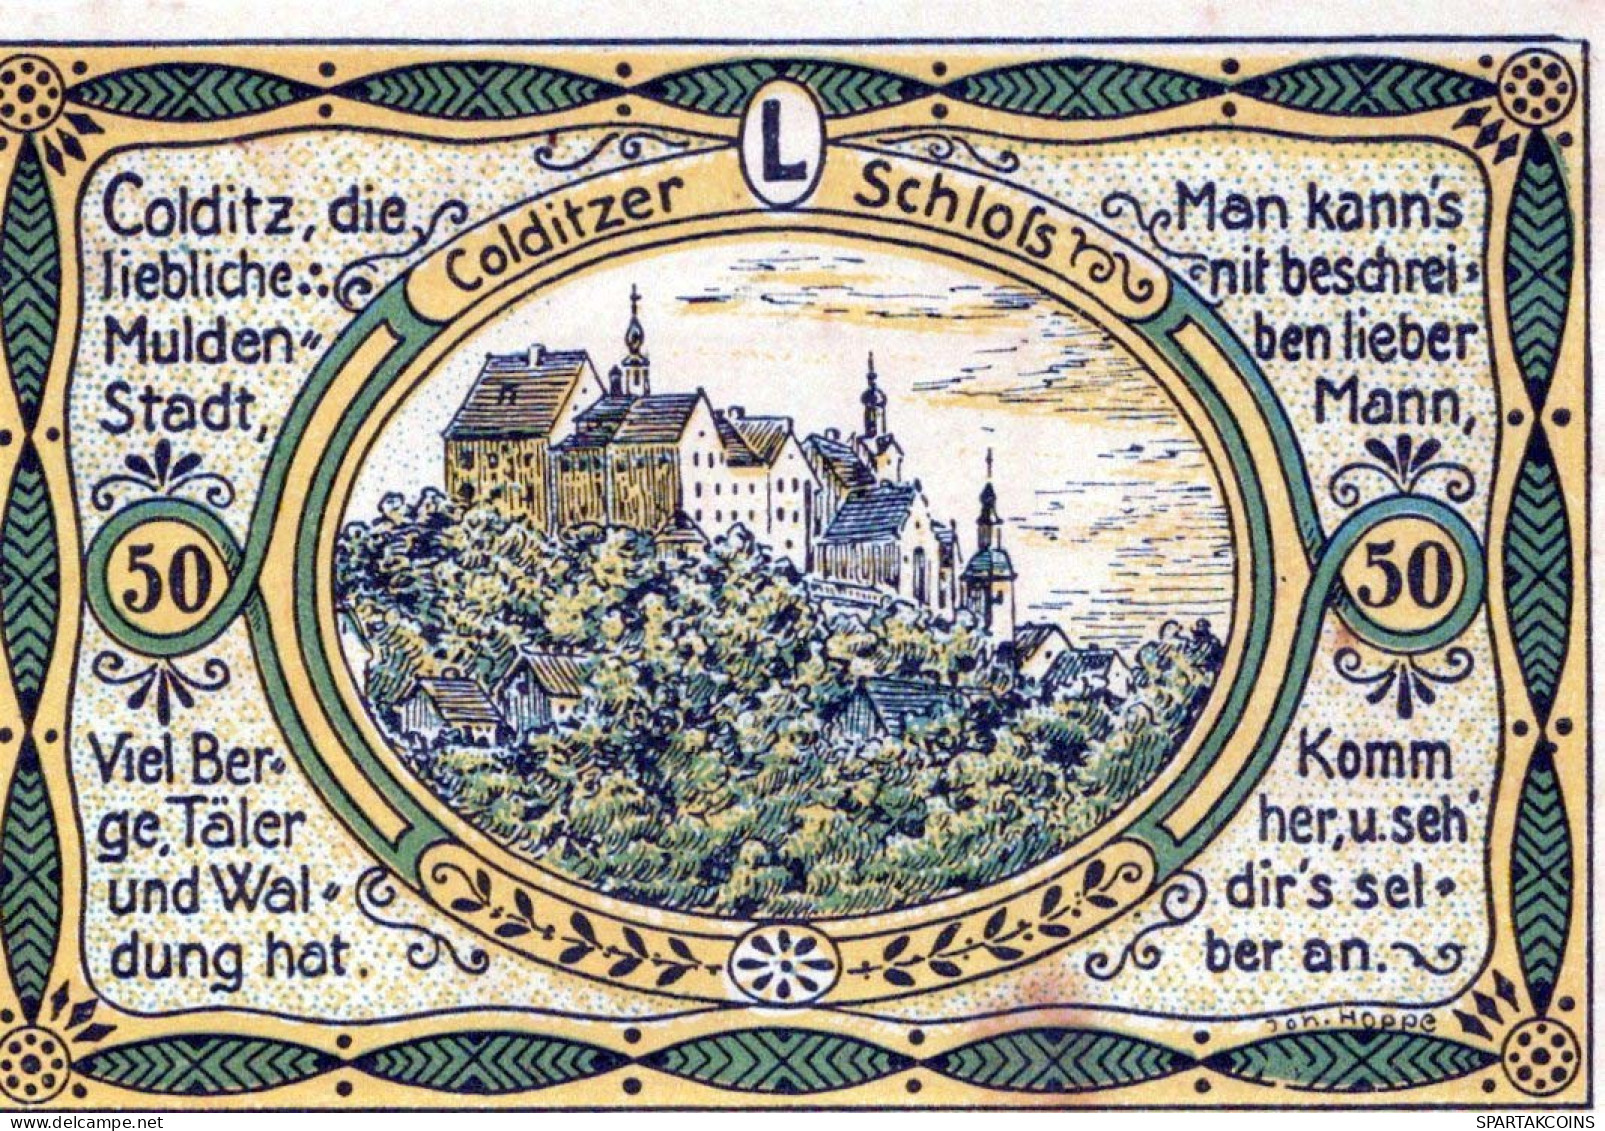 50 PFENNIG 1921 Stadt COLDITZ Saxony UNC DEUTSCHLAND Notgeld Banknote #PA403 - Lokale Ausgaben